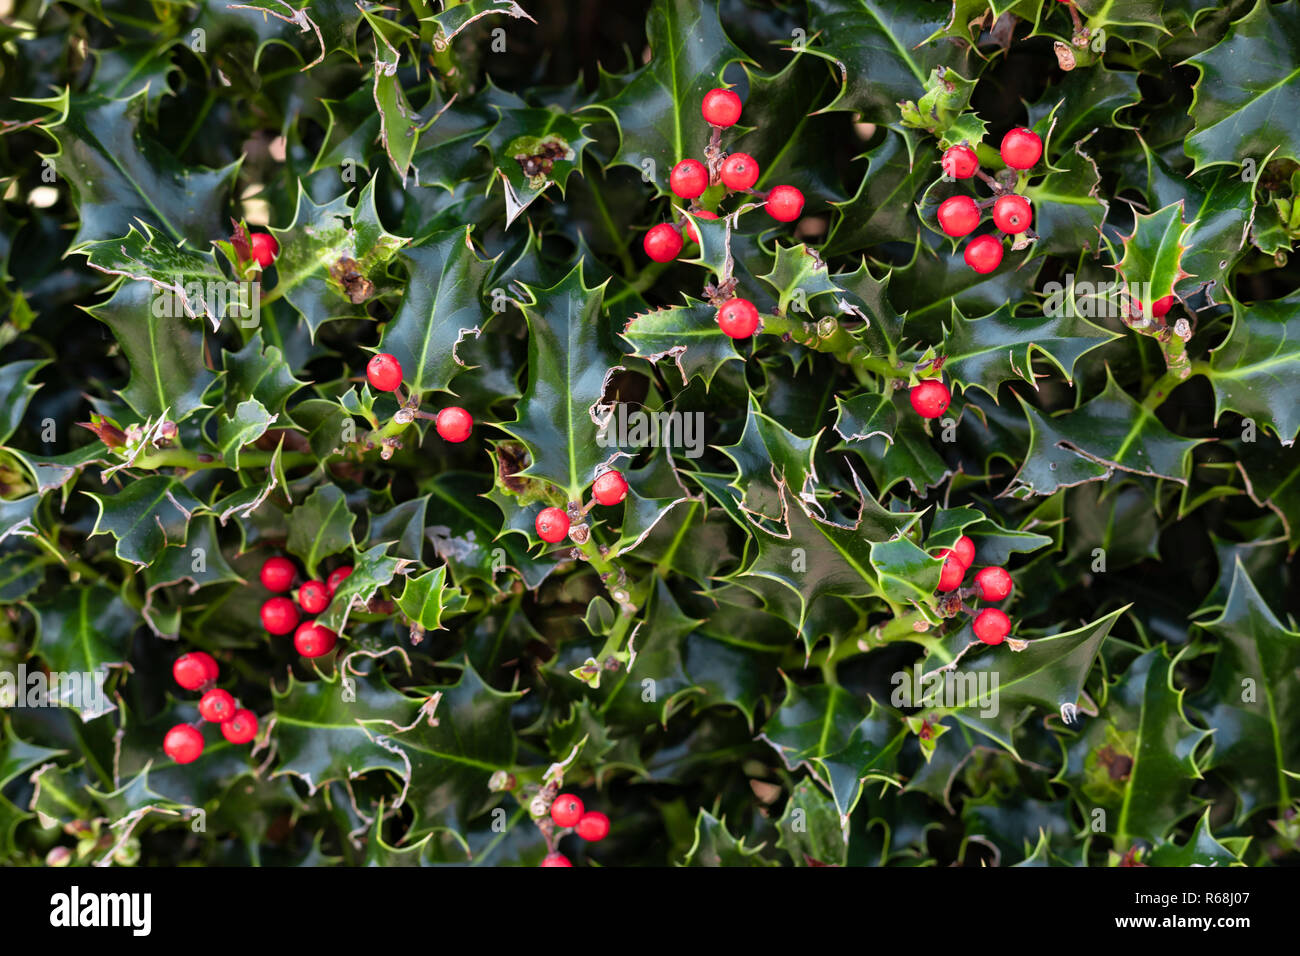 Nahaufnahme von einem Stacheligen holly grüne Pflanze mit roten Beeren, perfekt für die Verwendung als Weihnachten (Xmas) Hintergrund. Stockfoto